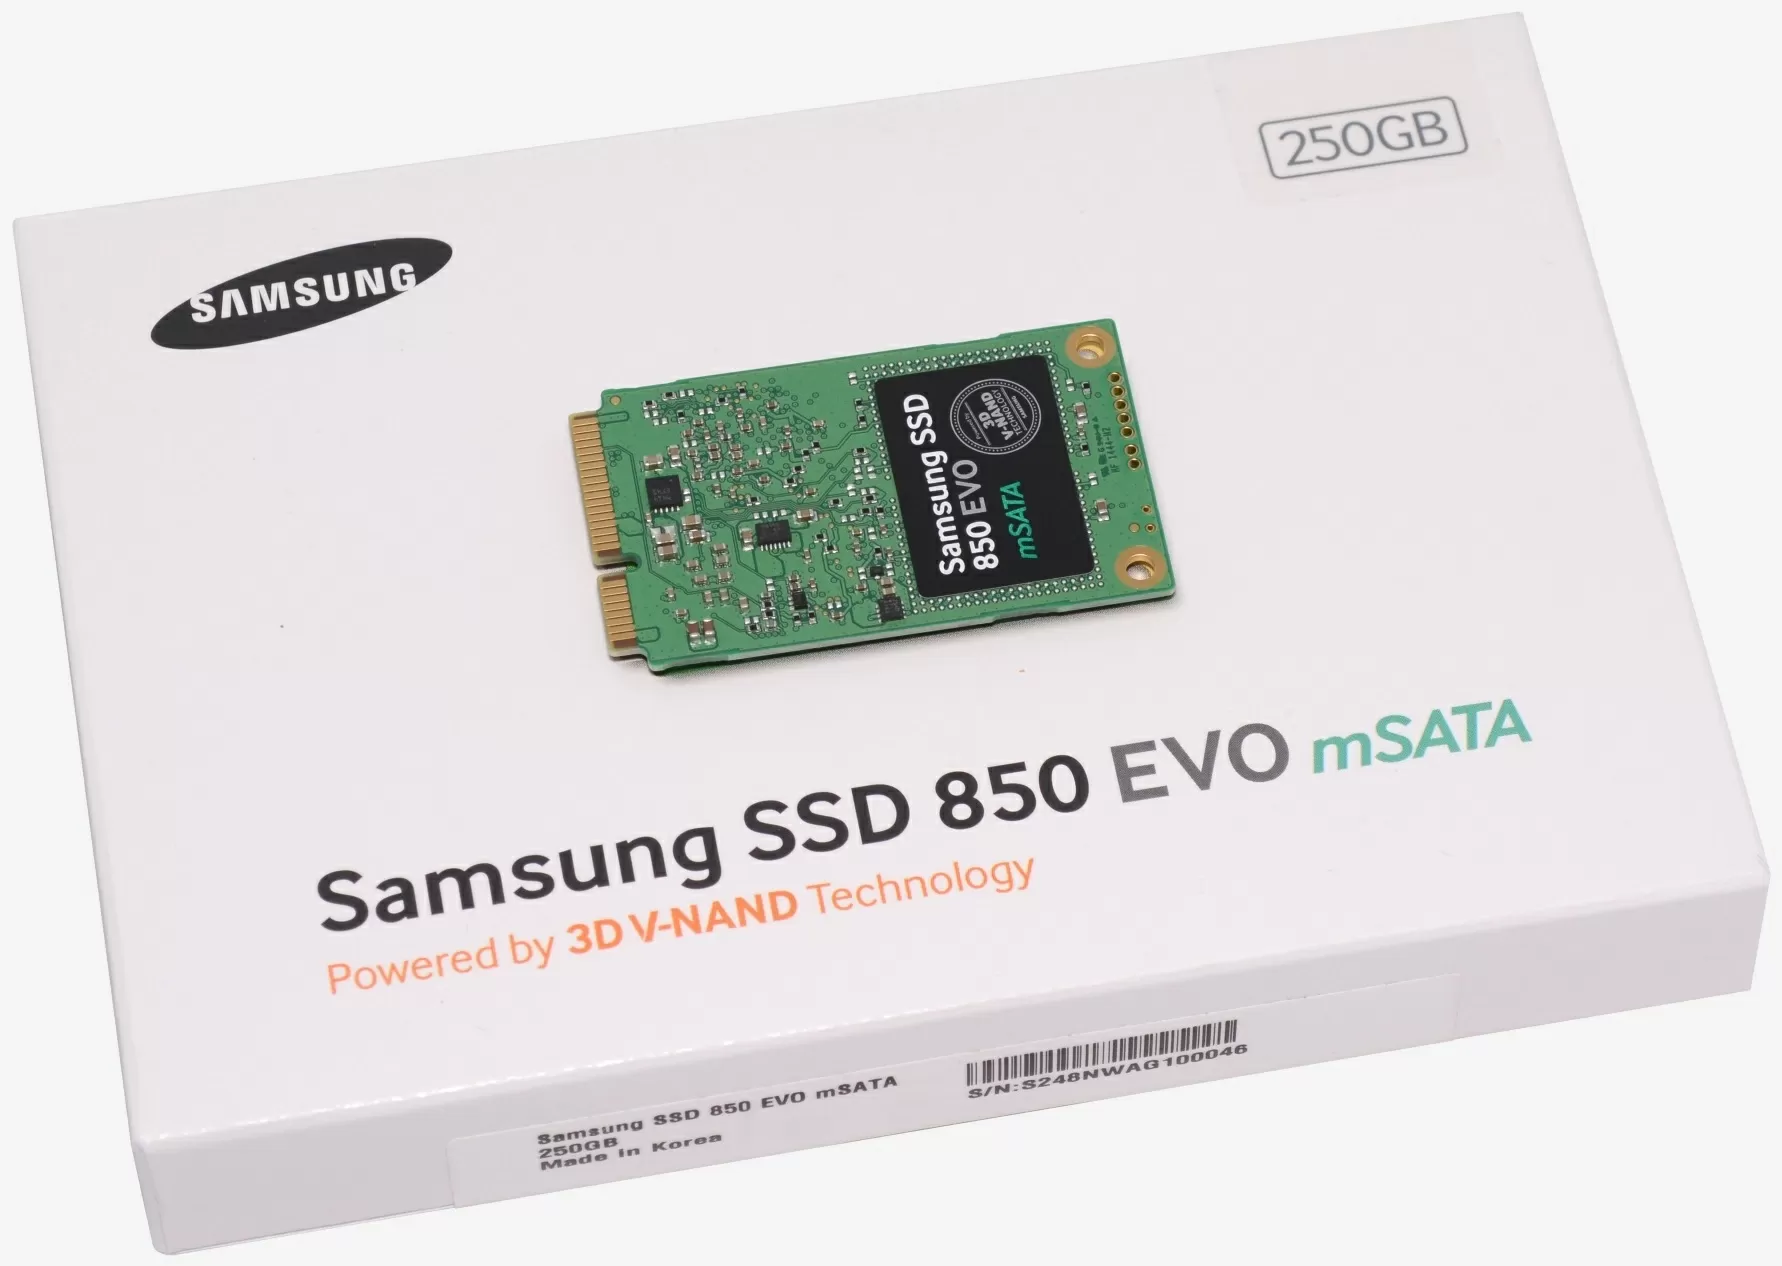 Oxide hand in farmers Samsung 850 Evo M.2 500GB & 850 Evo 250GB mSATA Review | TechSpot